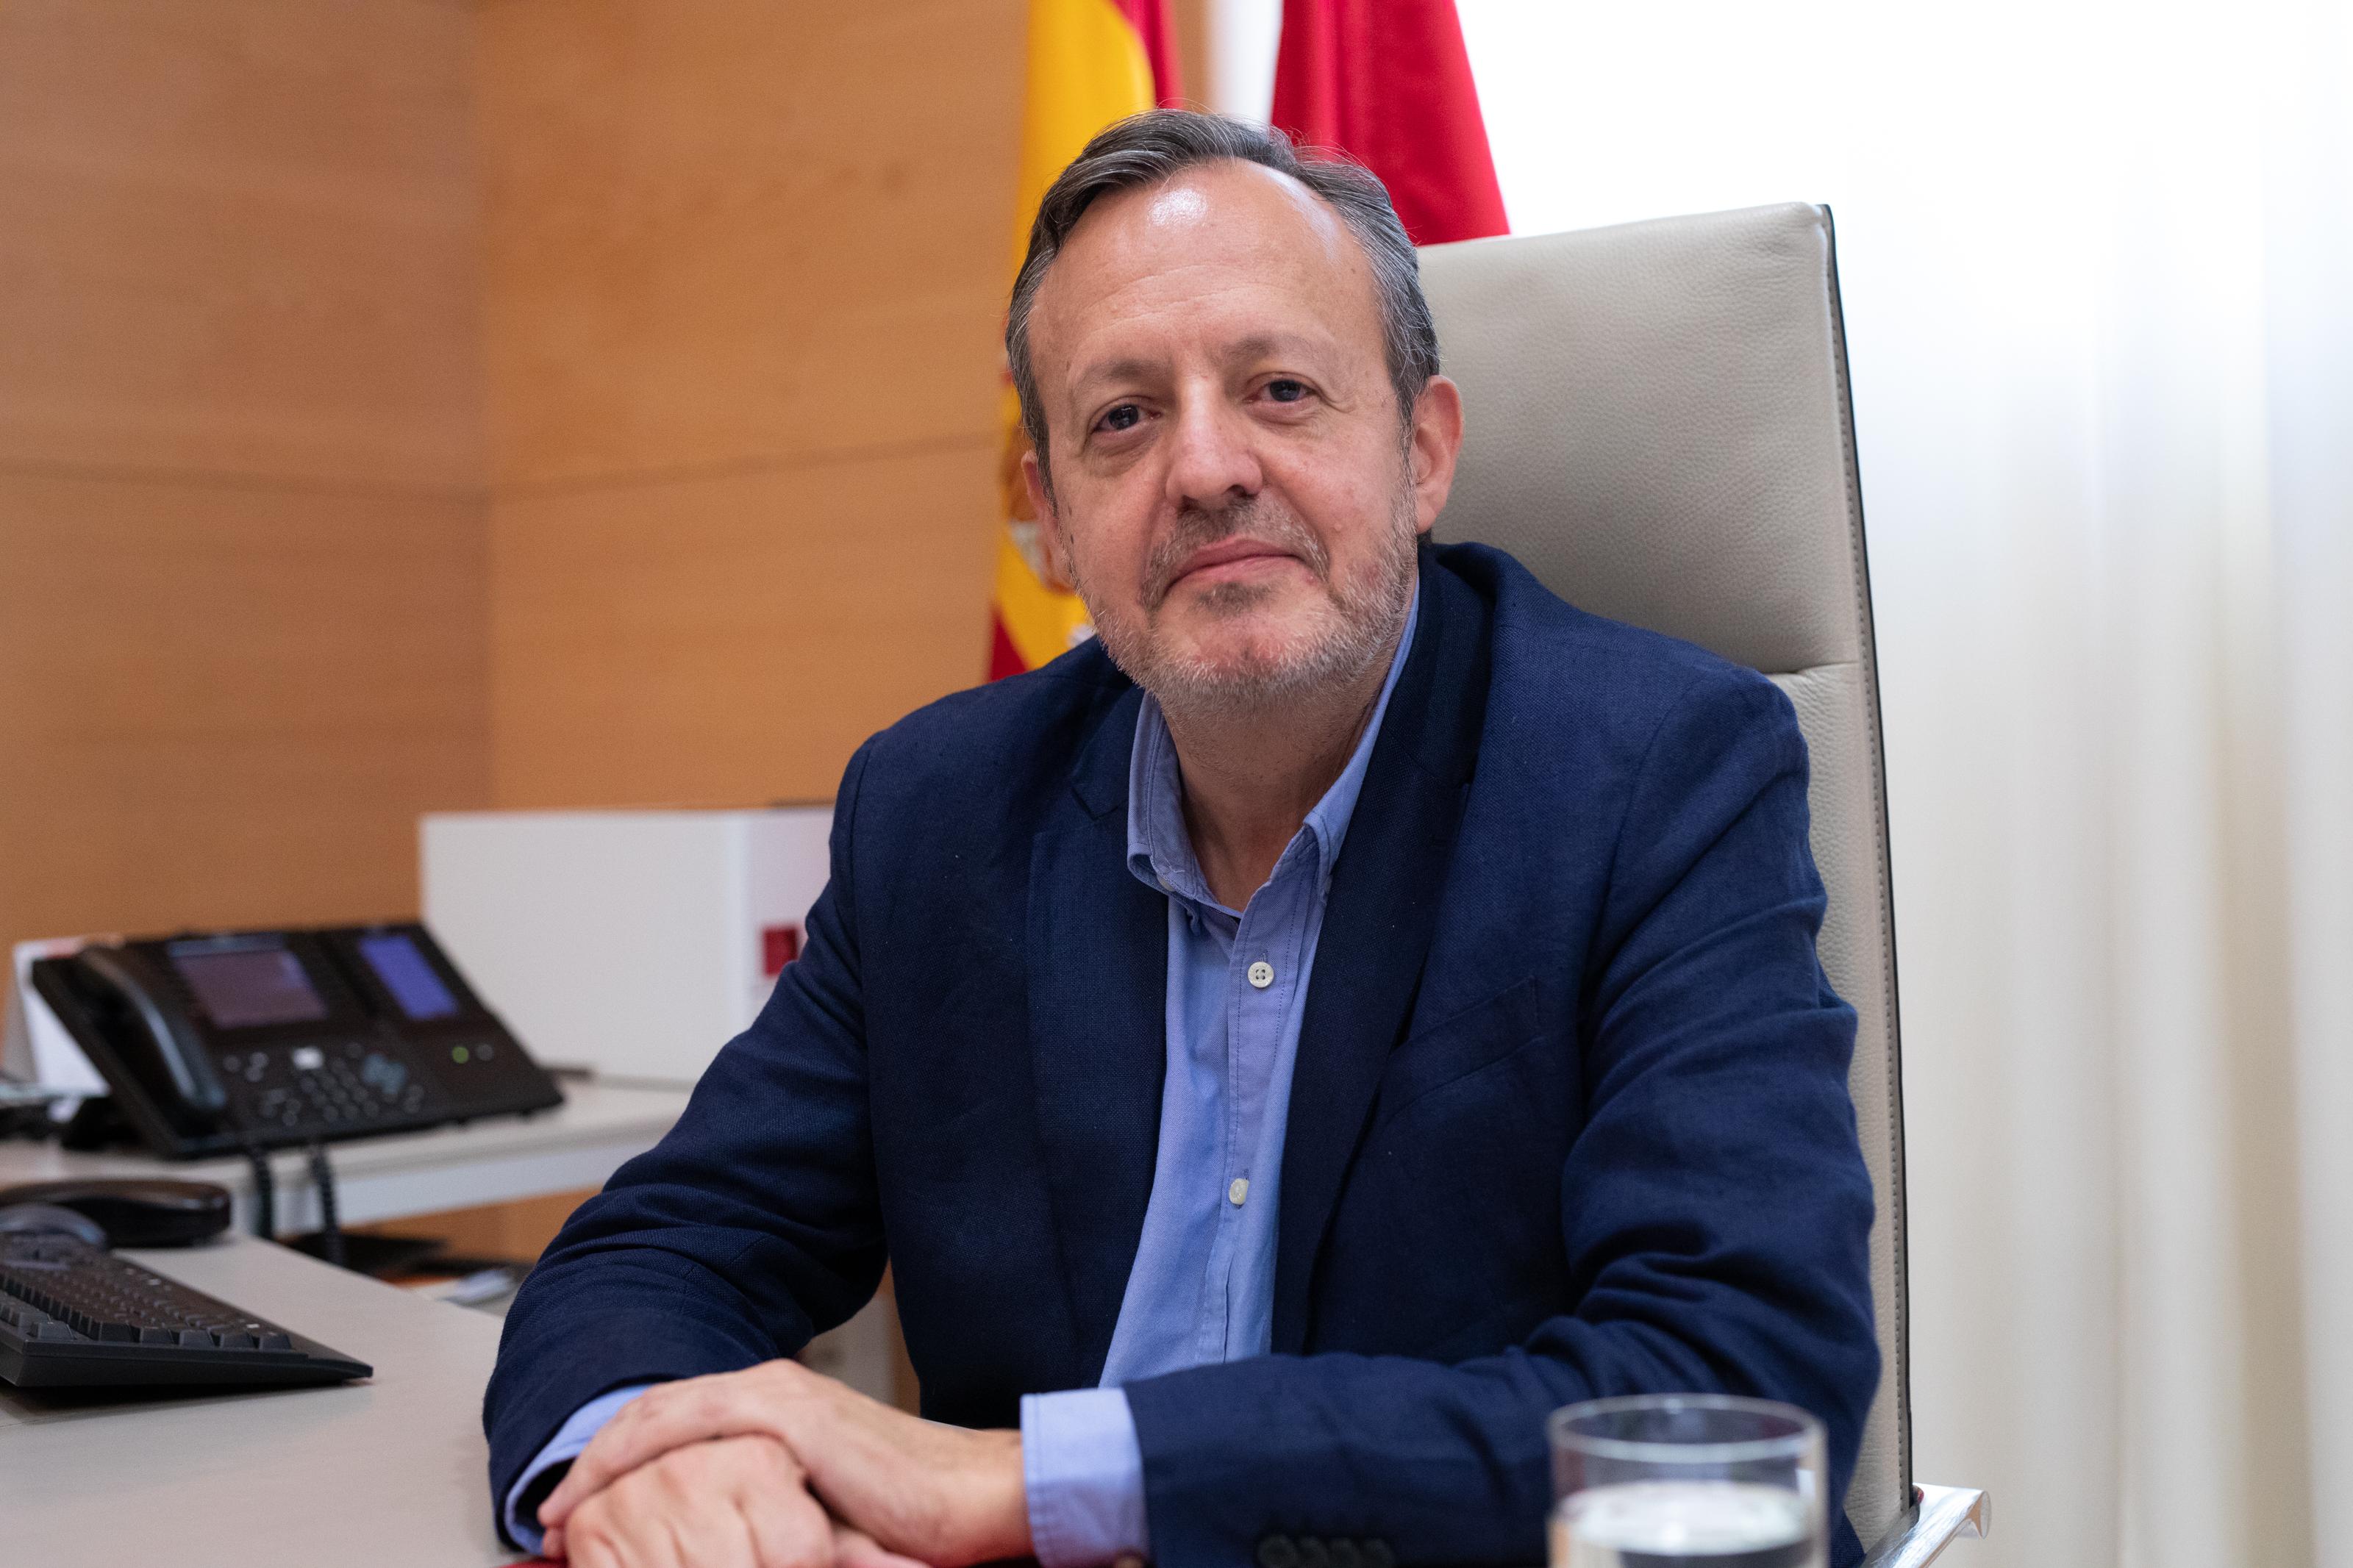 El consejero de Políticas Sociales Igualdad y Natalidad de la Comunidad de Madrid Alberto Reyero en Madrid el 25 de septiembre de 2019